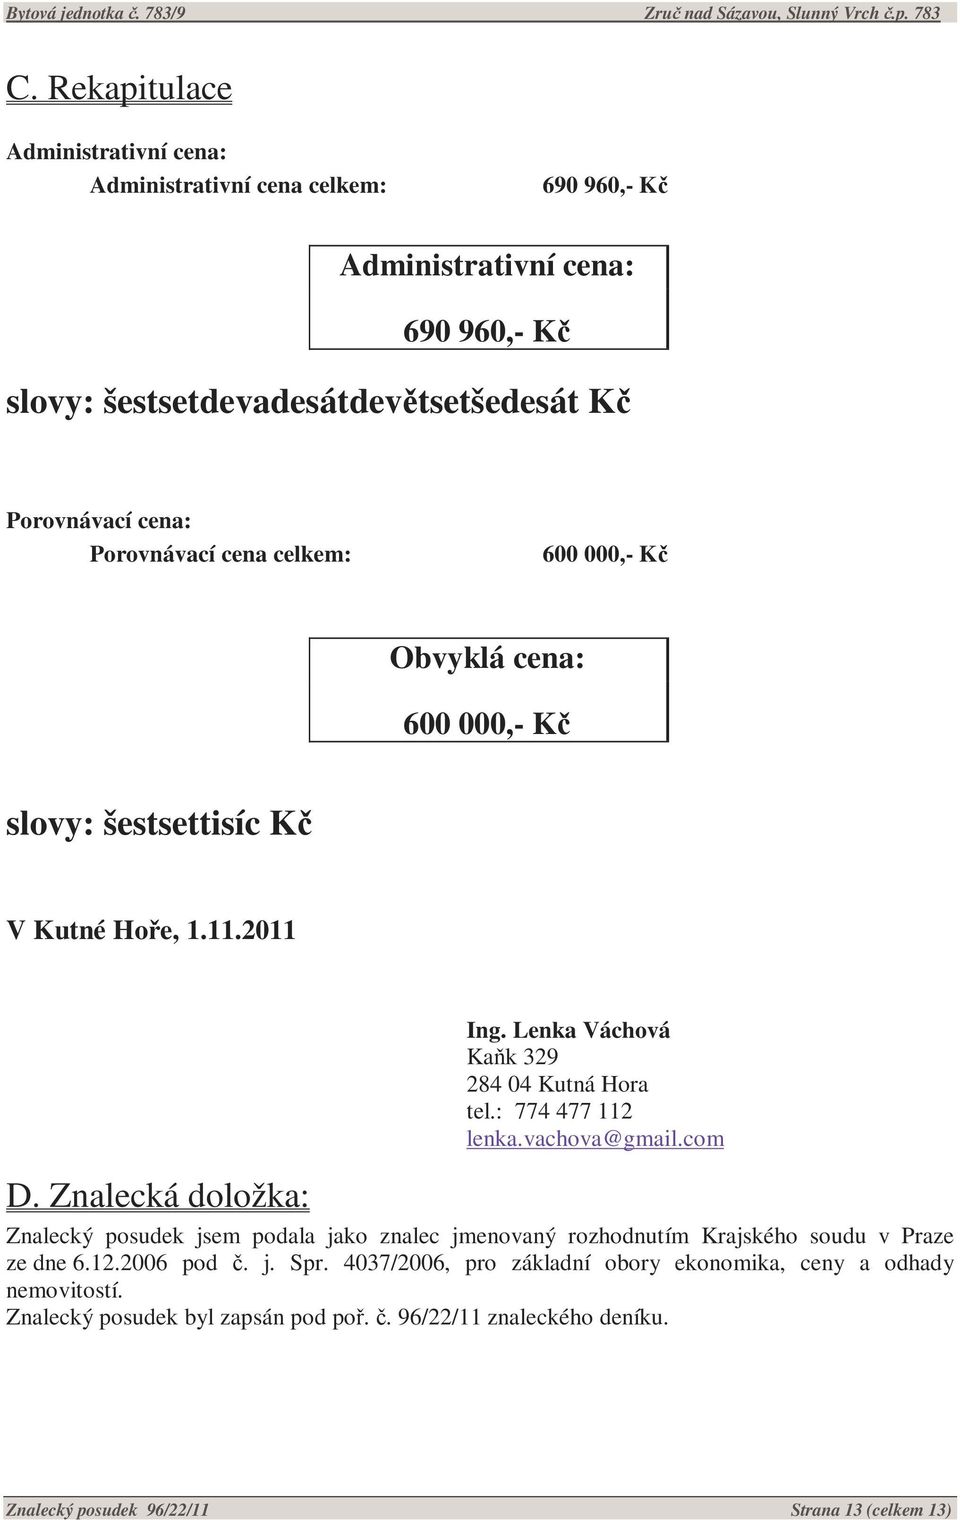 : 774 477 112 lenka.vachova@gmail.com D. Znalecká doložka: Znalecký posudek jsem podala jako znalec jmenovaný rozhodnutím Krajského soudu v Praze ze dne 6.12.2006 pod č. j. Spr.